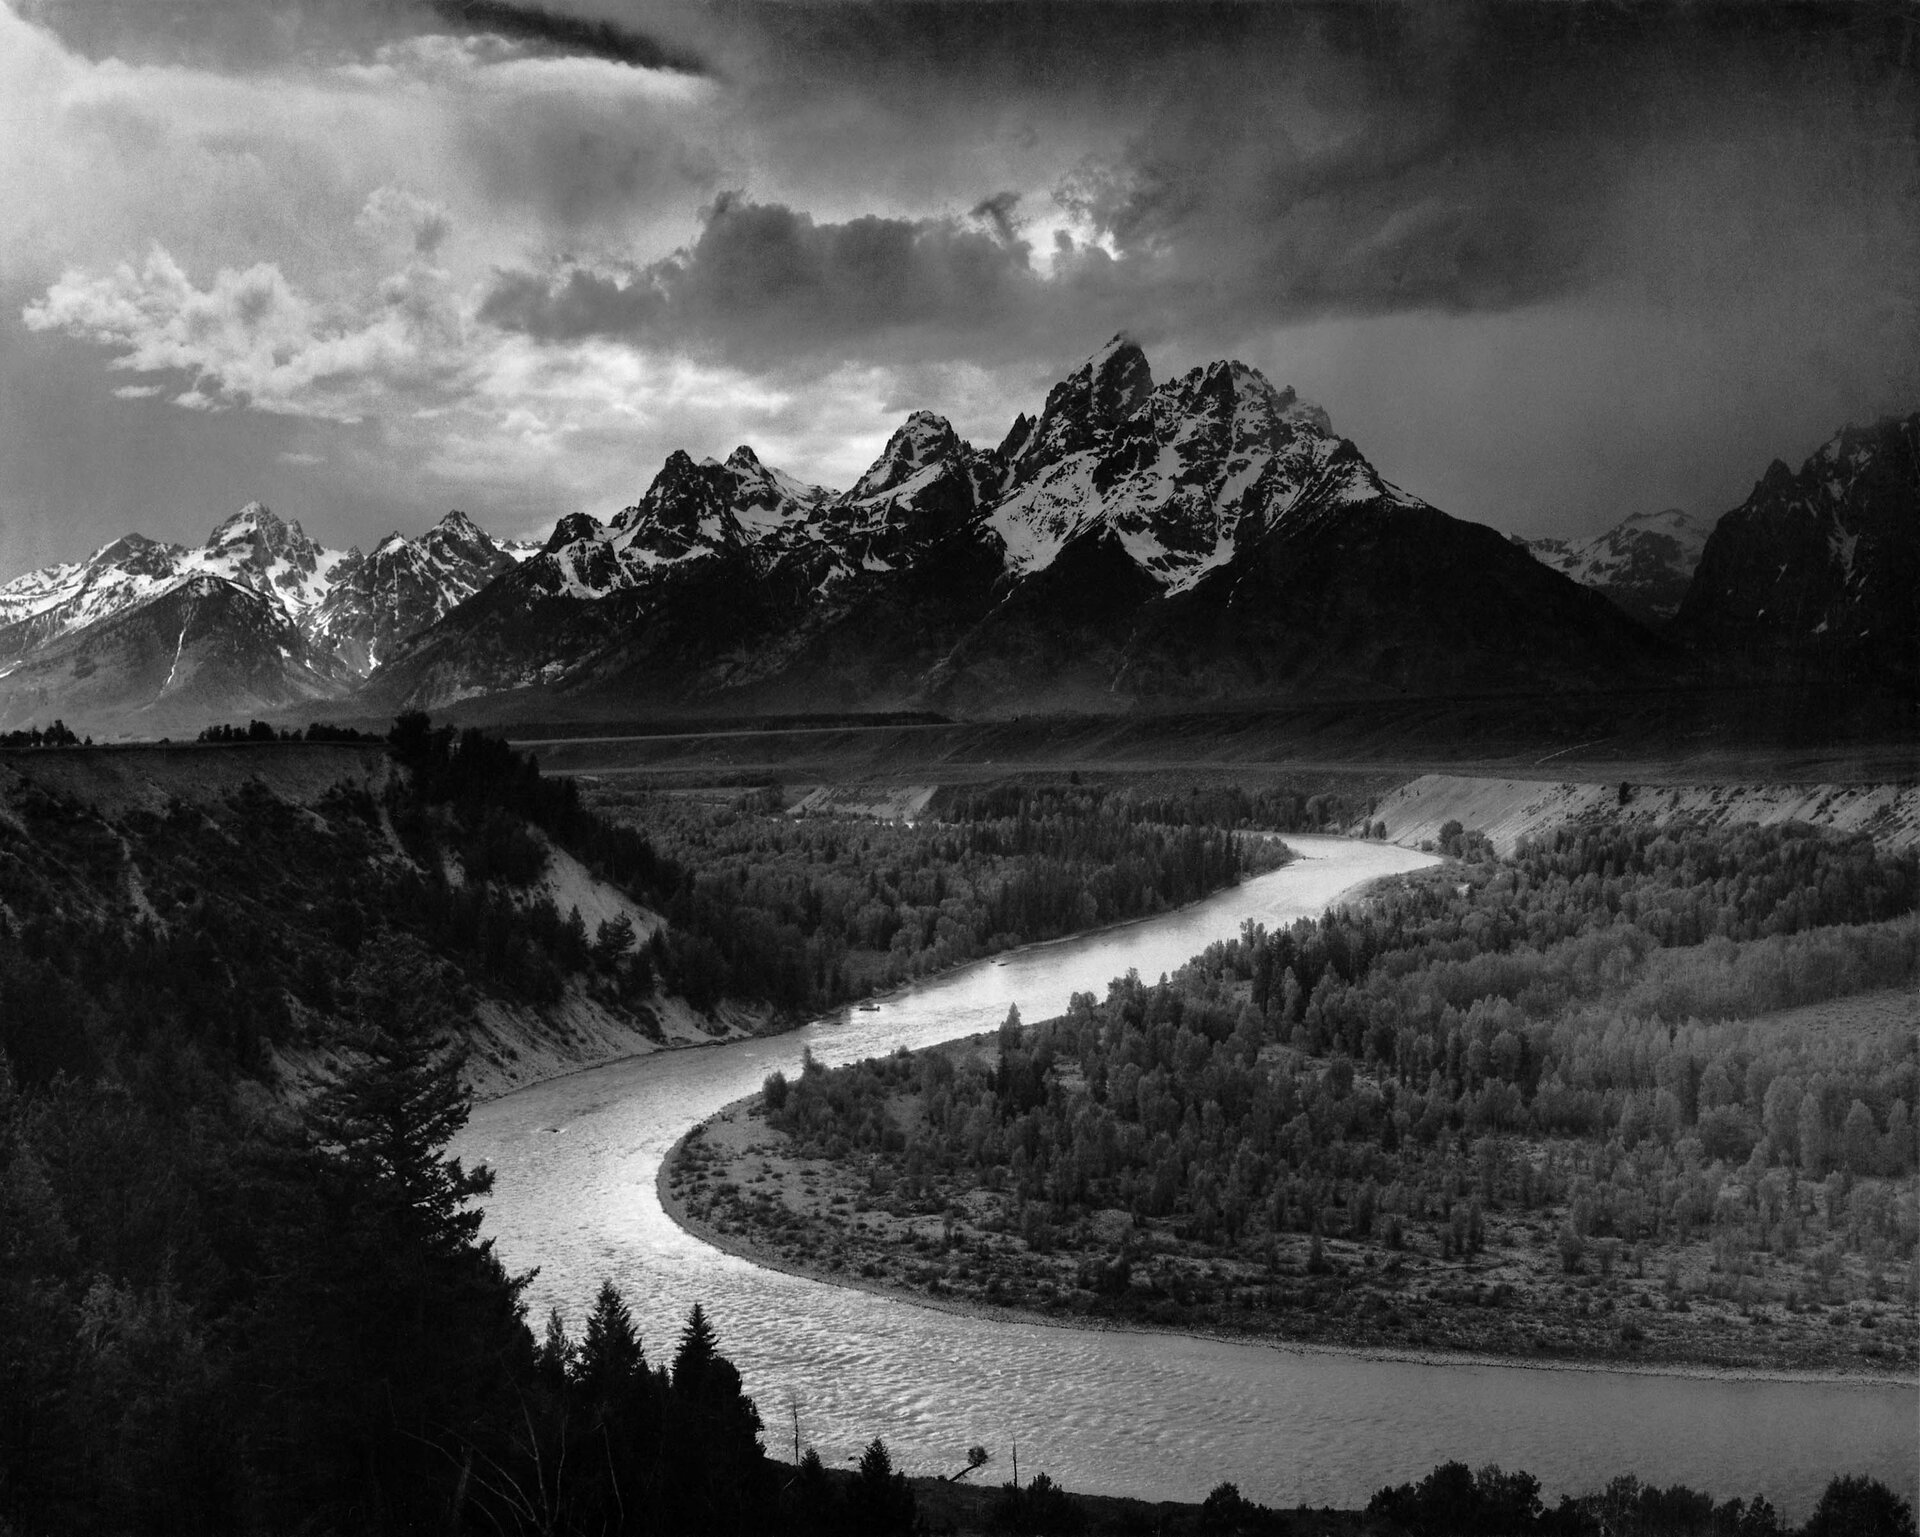 Góry Teton i rzeka Snake Źródło: Ansel Adams, Góry Teton i rzeka Snake, 1942, fotografia czarno-biała, domena publiczna.